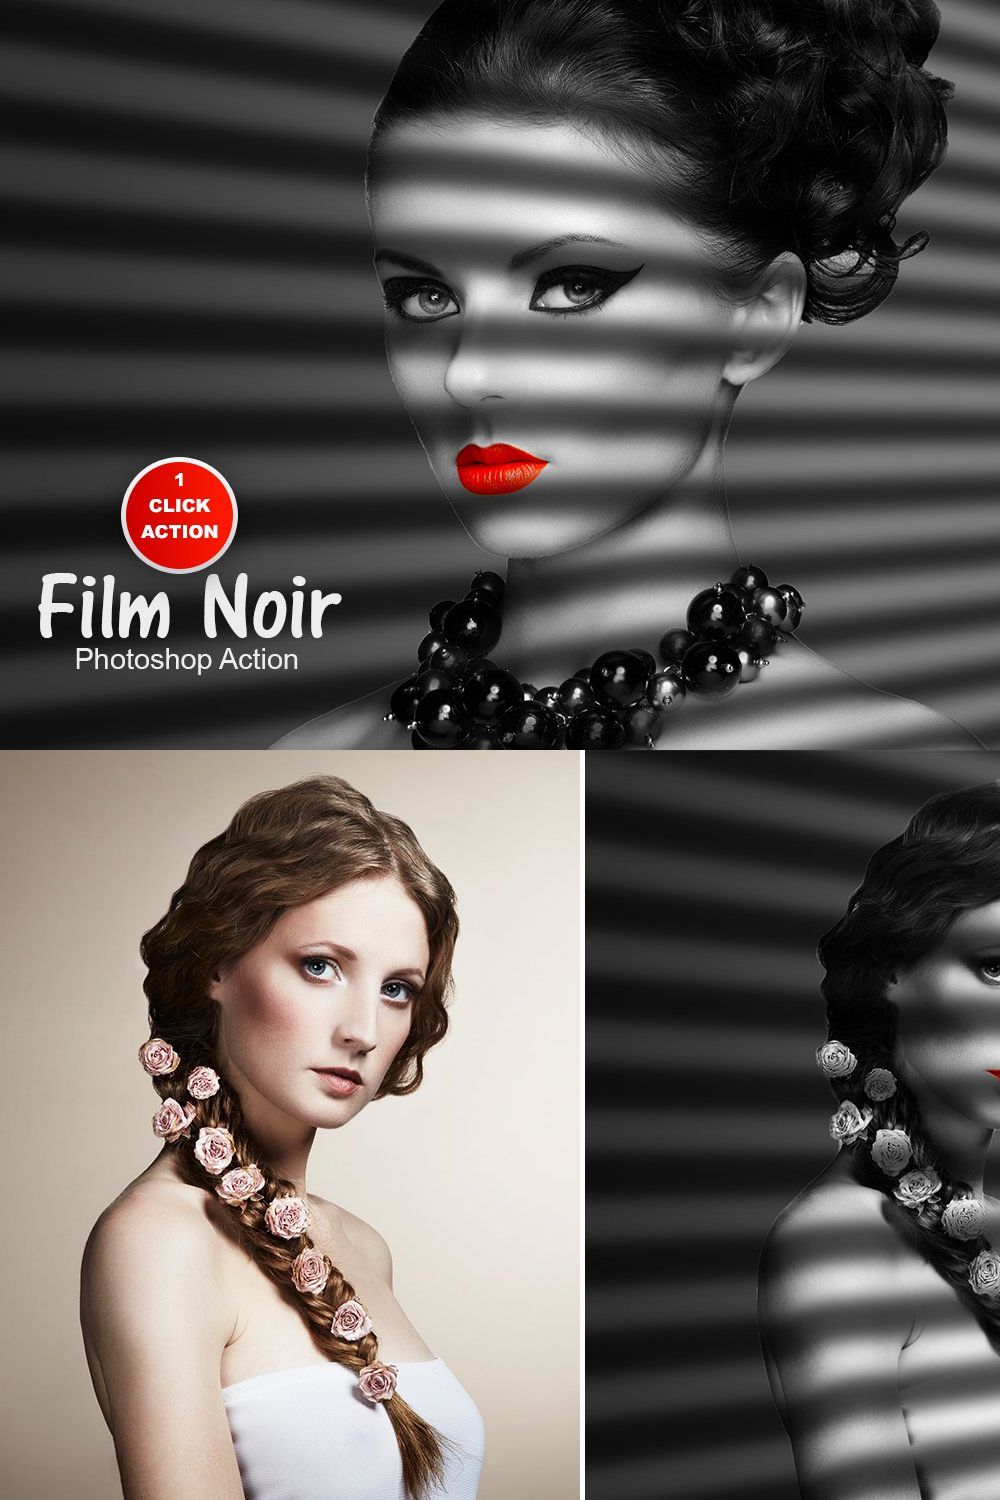 Film Noir Photoshop Action pinterest preview image.